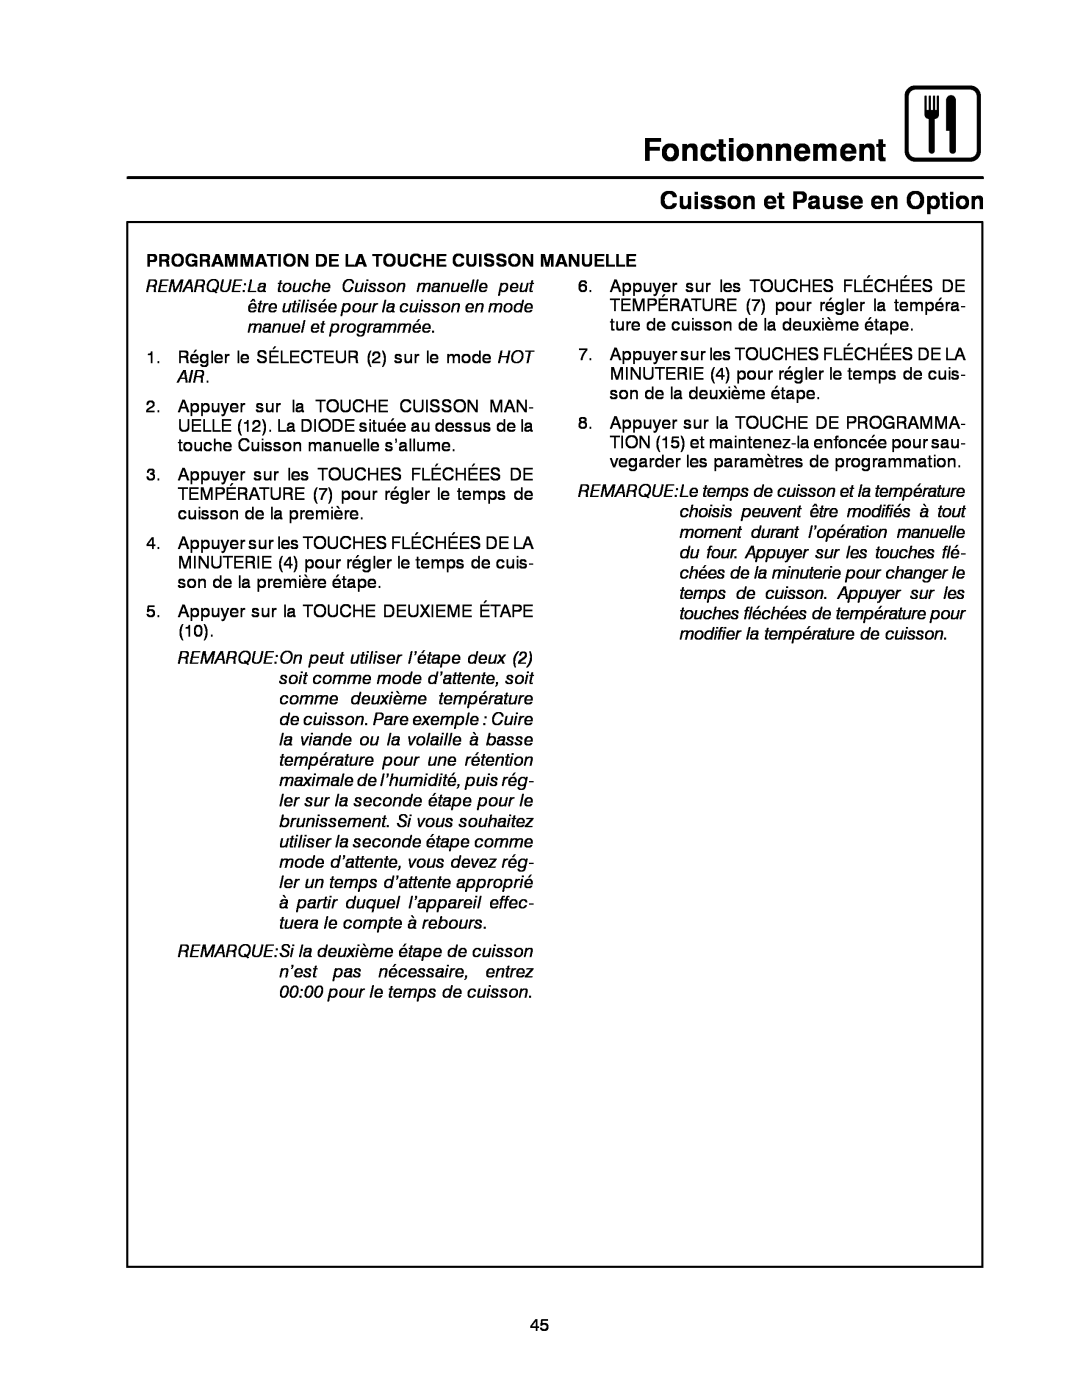 Blodgett CNV14E, CNV14G manual Fonctionnement, Cuisson et Pause en Option, Programmation De La Touche Cuisson Manuelle 